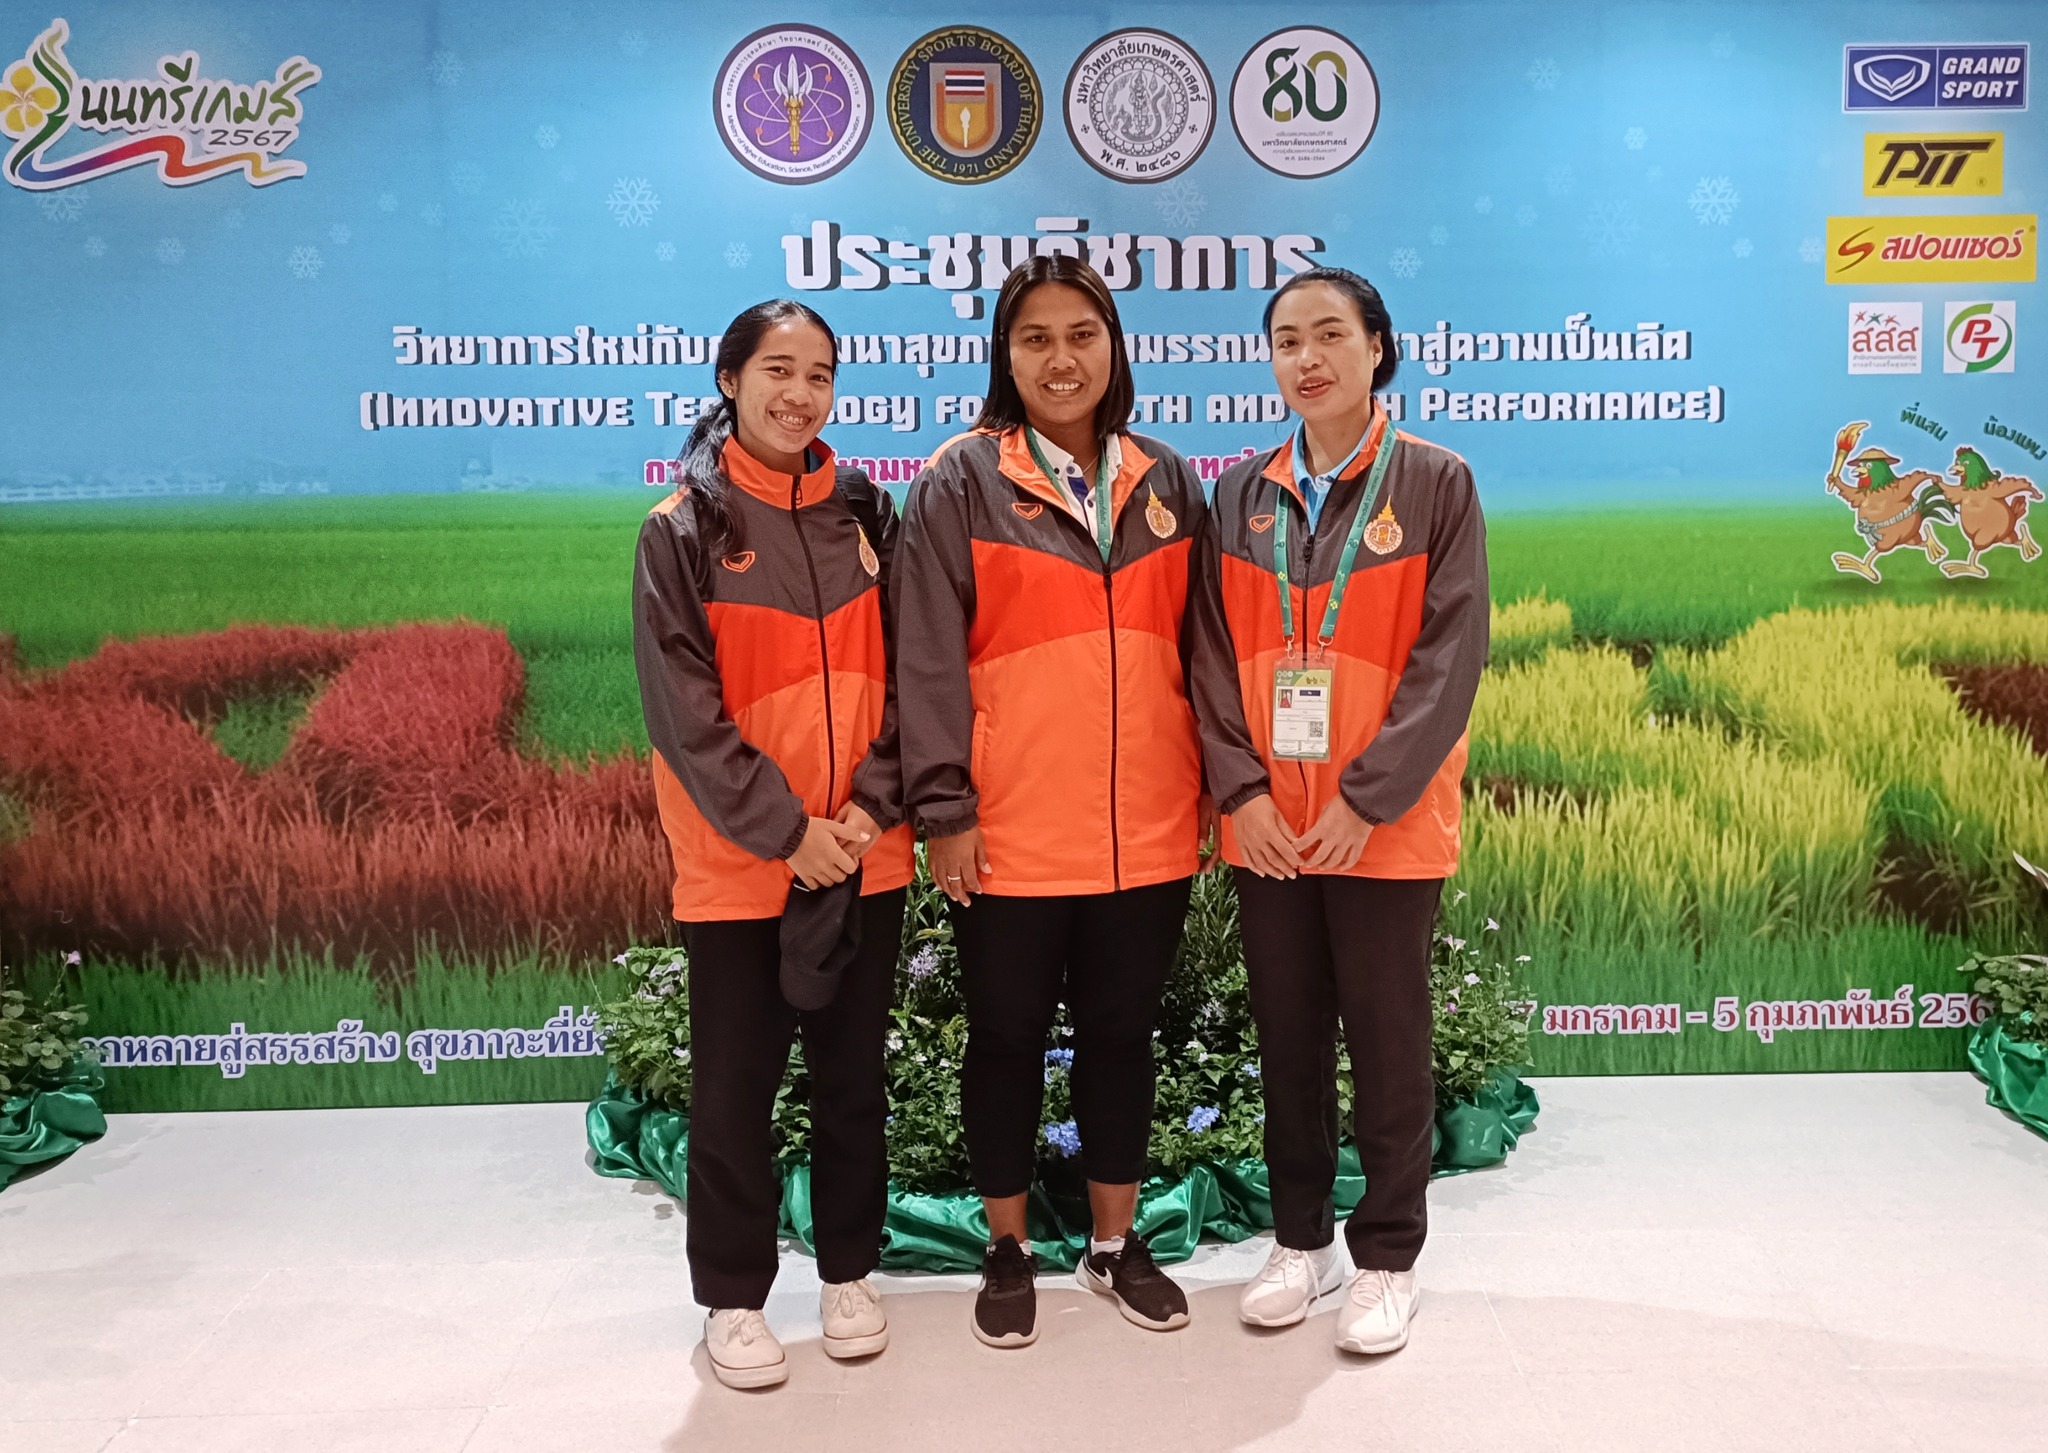 ศูนย์ส่งเสริมวัฒนธรรมและการกีฬา ได้เข้าร่วมประชุมวิชาการ กีฬามหาวิทยาลัยแห่งประเทศไทย ครั้งที่ 49 “นนทรีเกมส์ 2567” วันที่ 30 มกราคม 2567